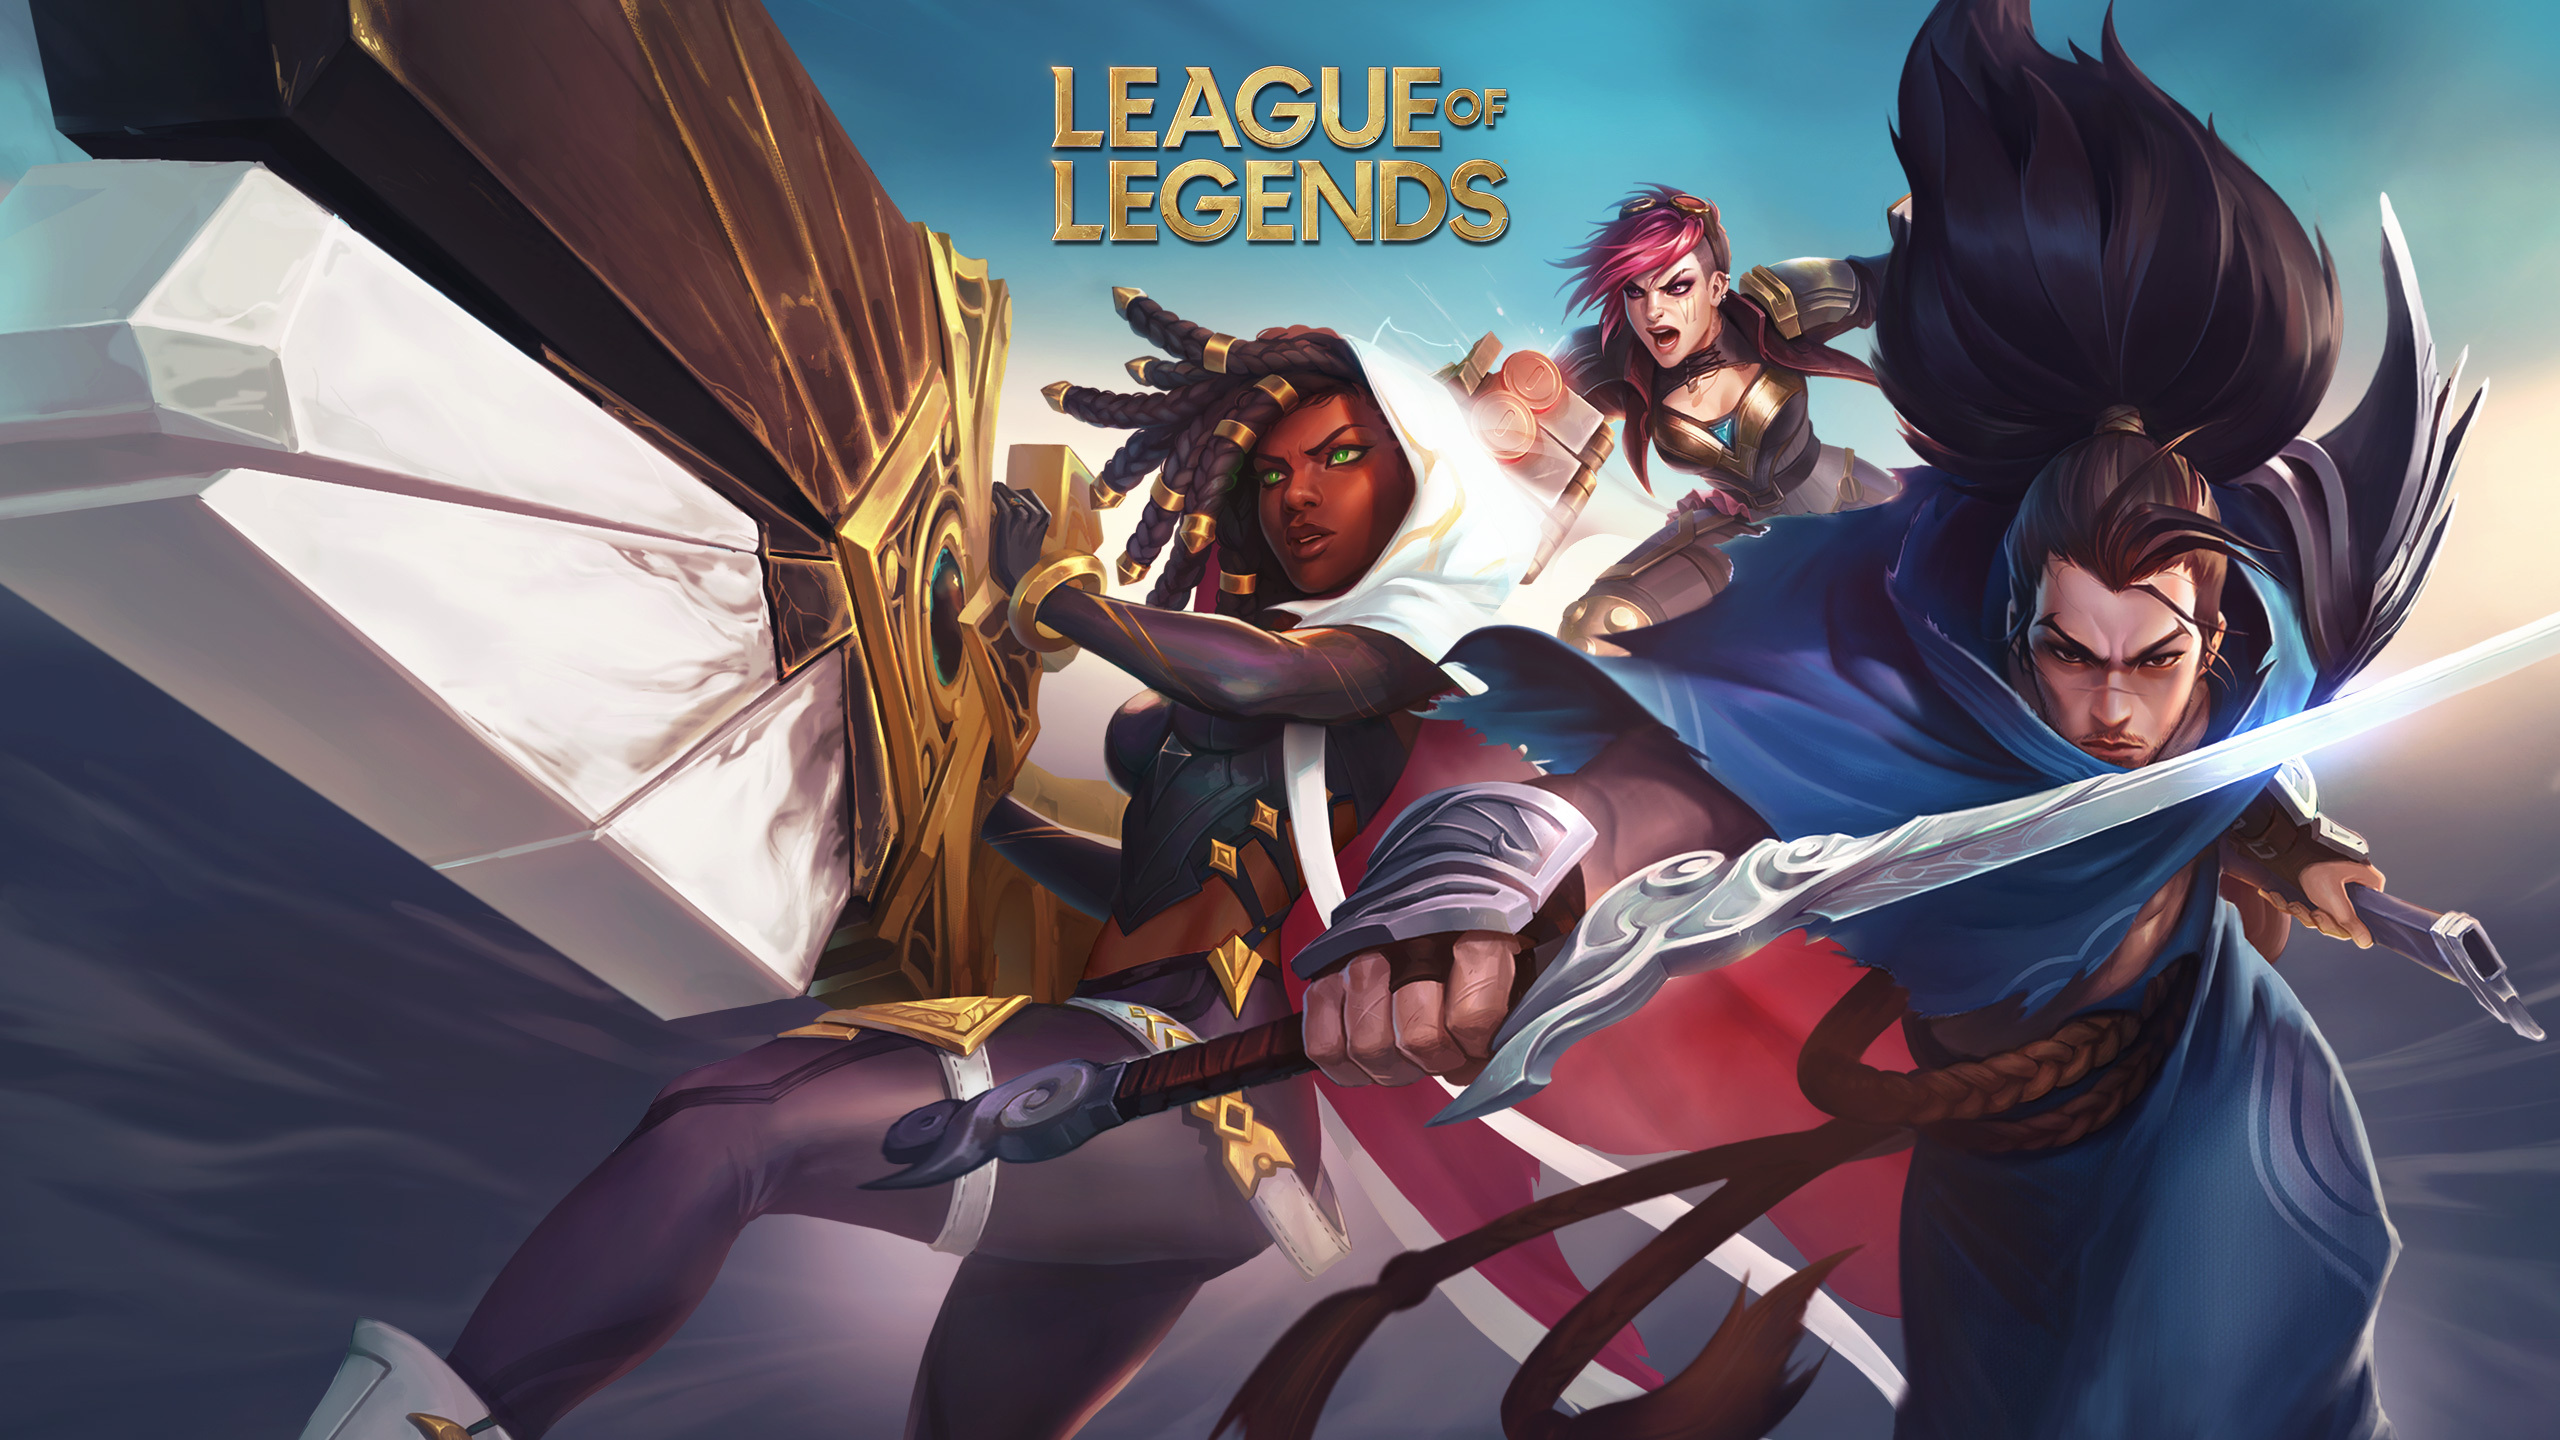 Arquivos League of Legends - Página 3 de 11 - Esports 24 Horas